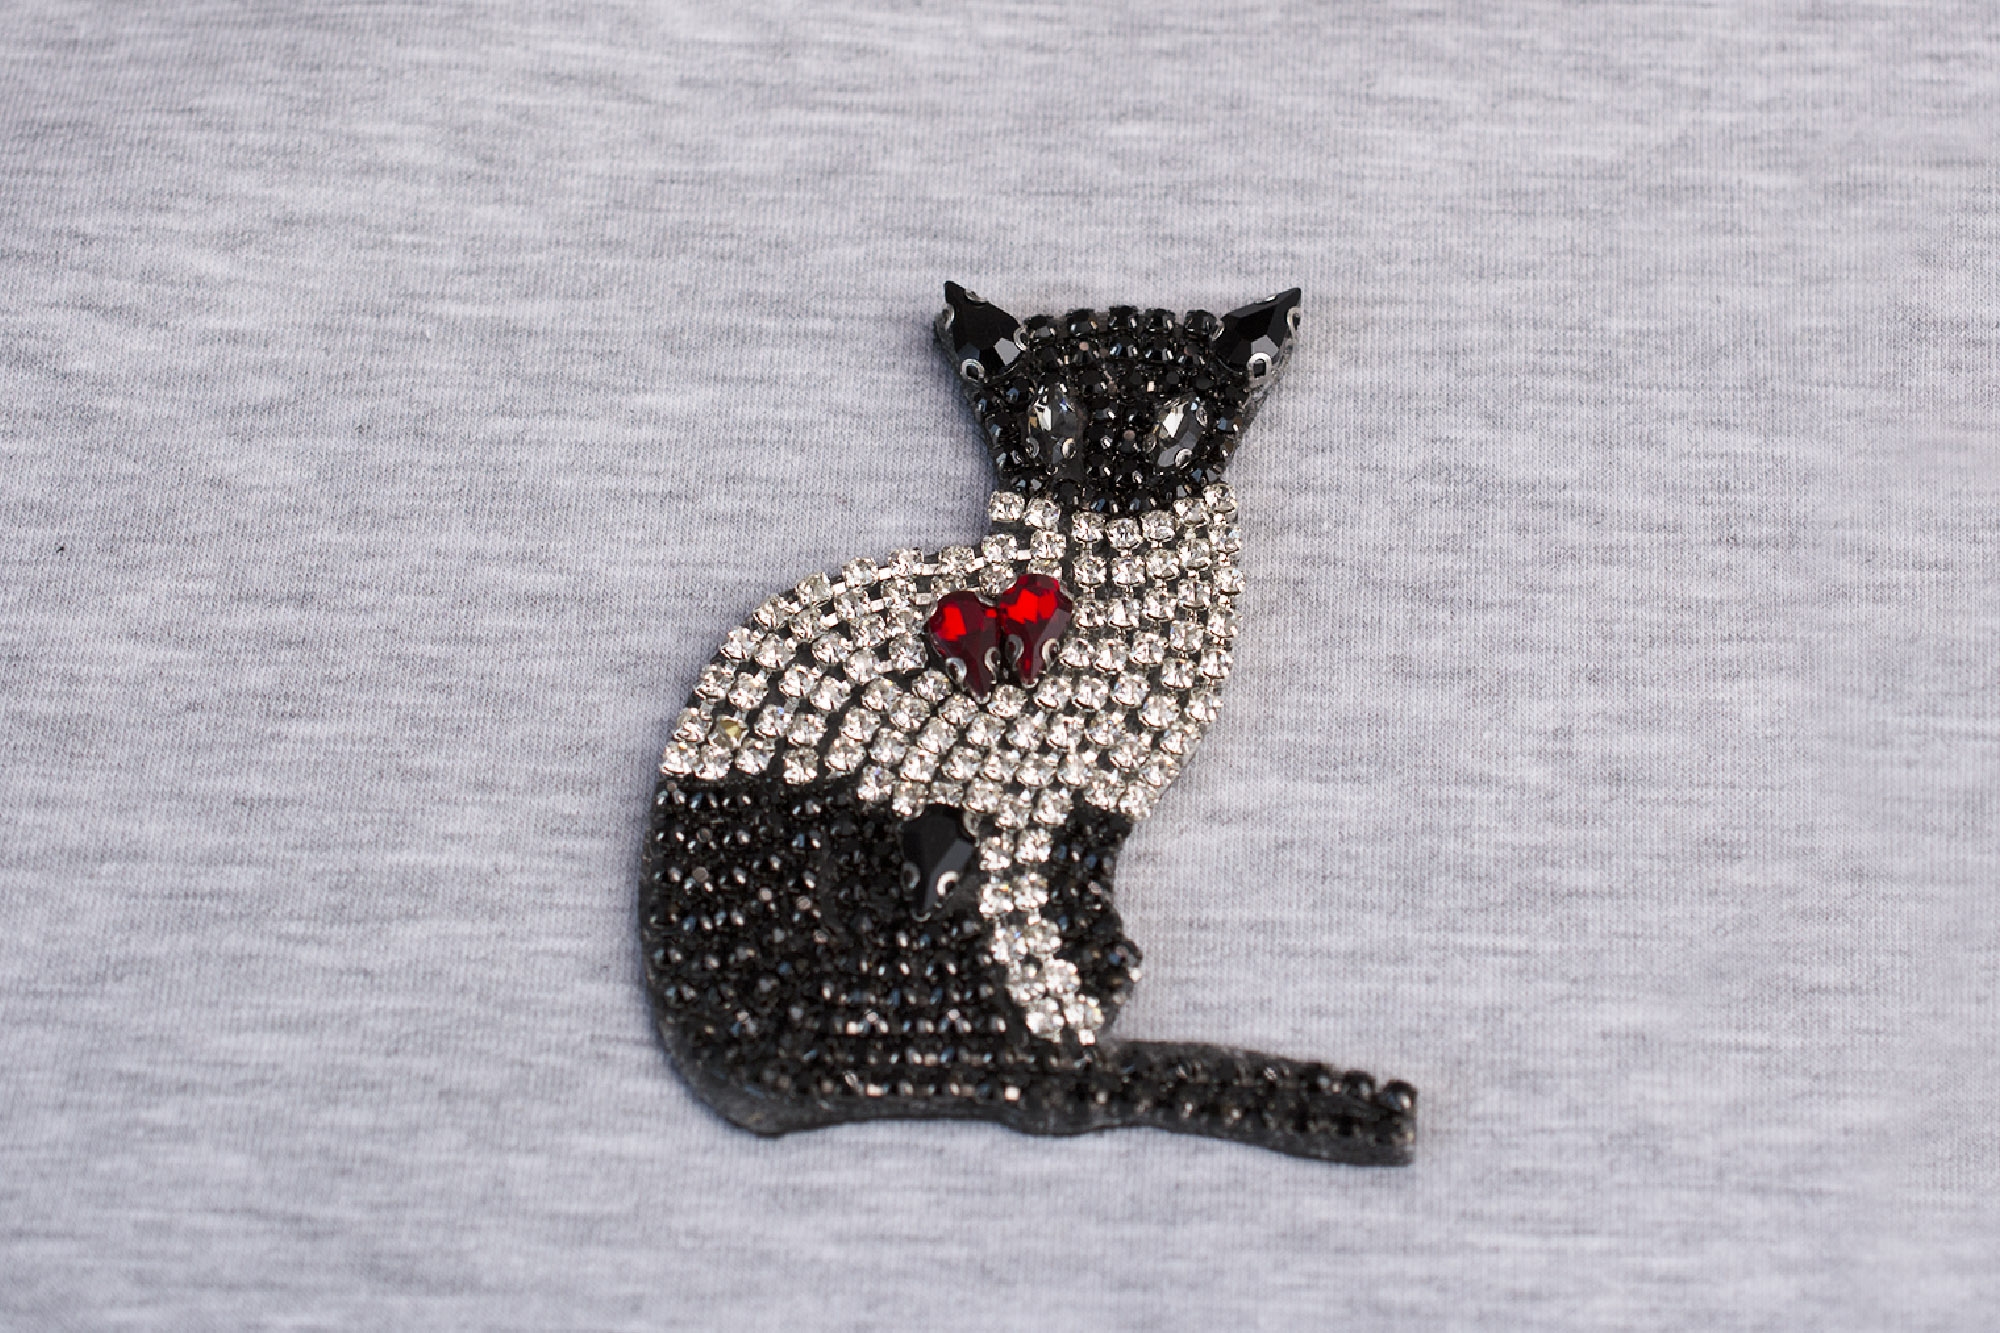 Aplikacja w kształcie kota wykonana z kryształków a la Swarovski, na filcu.